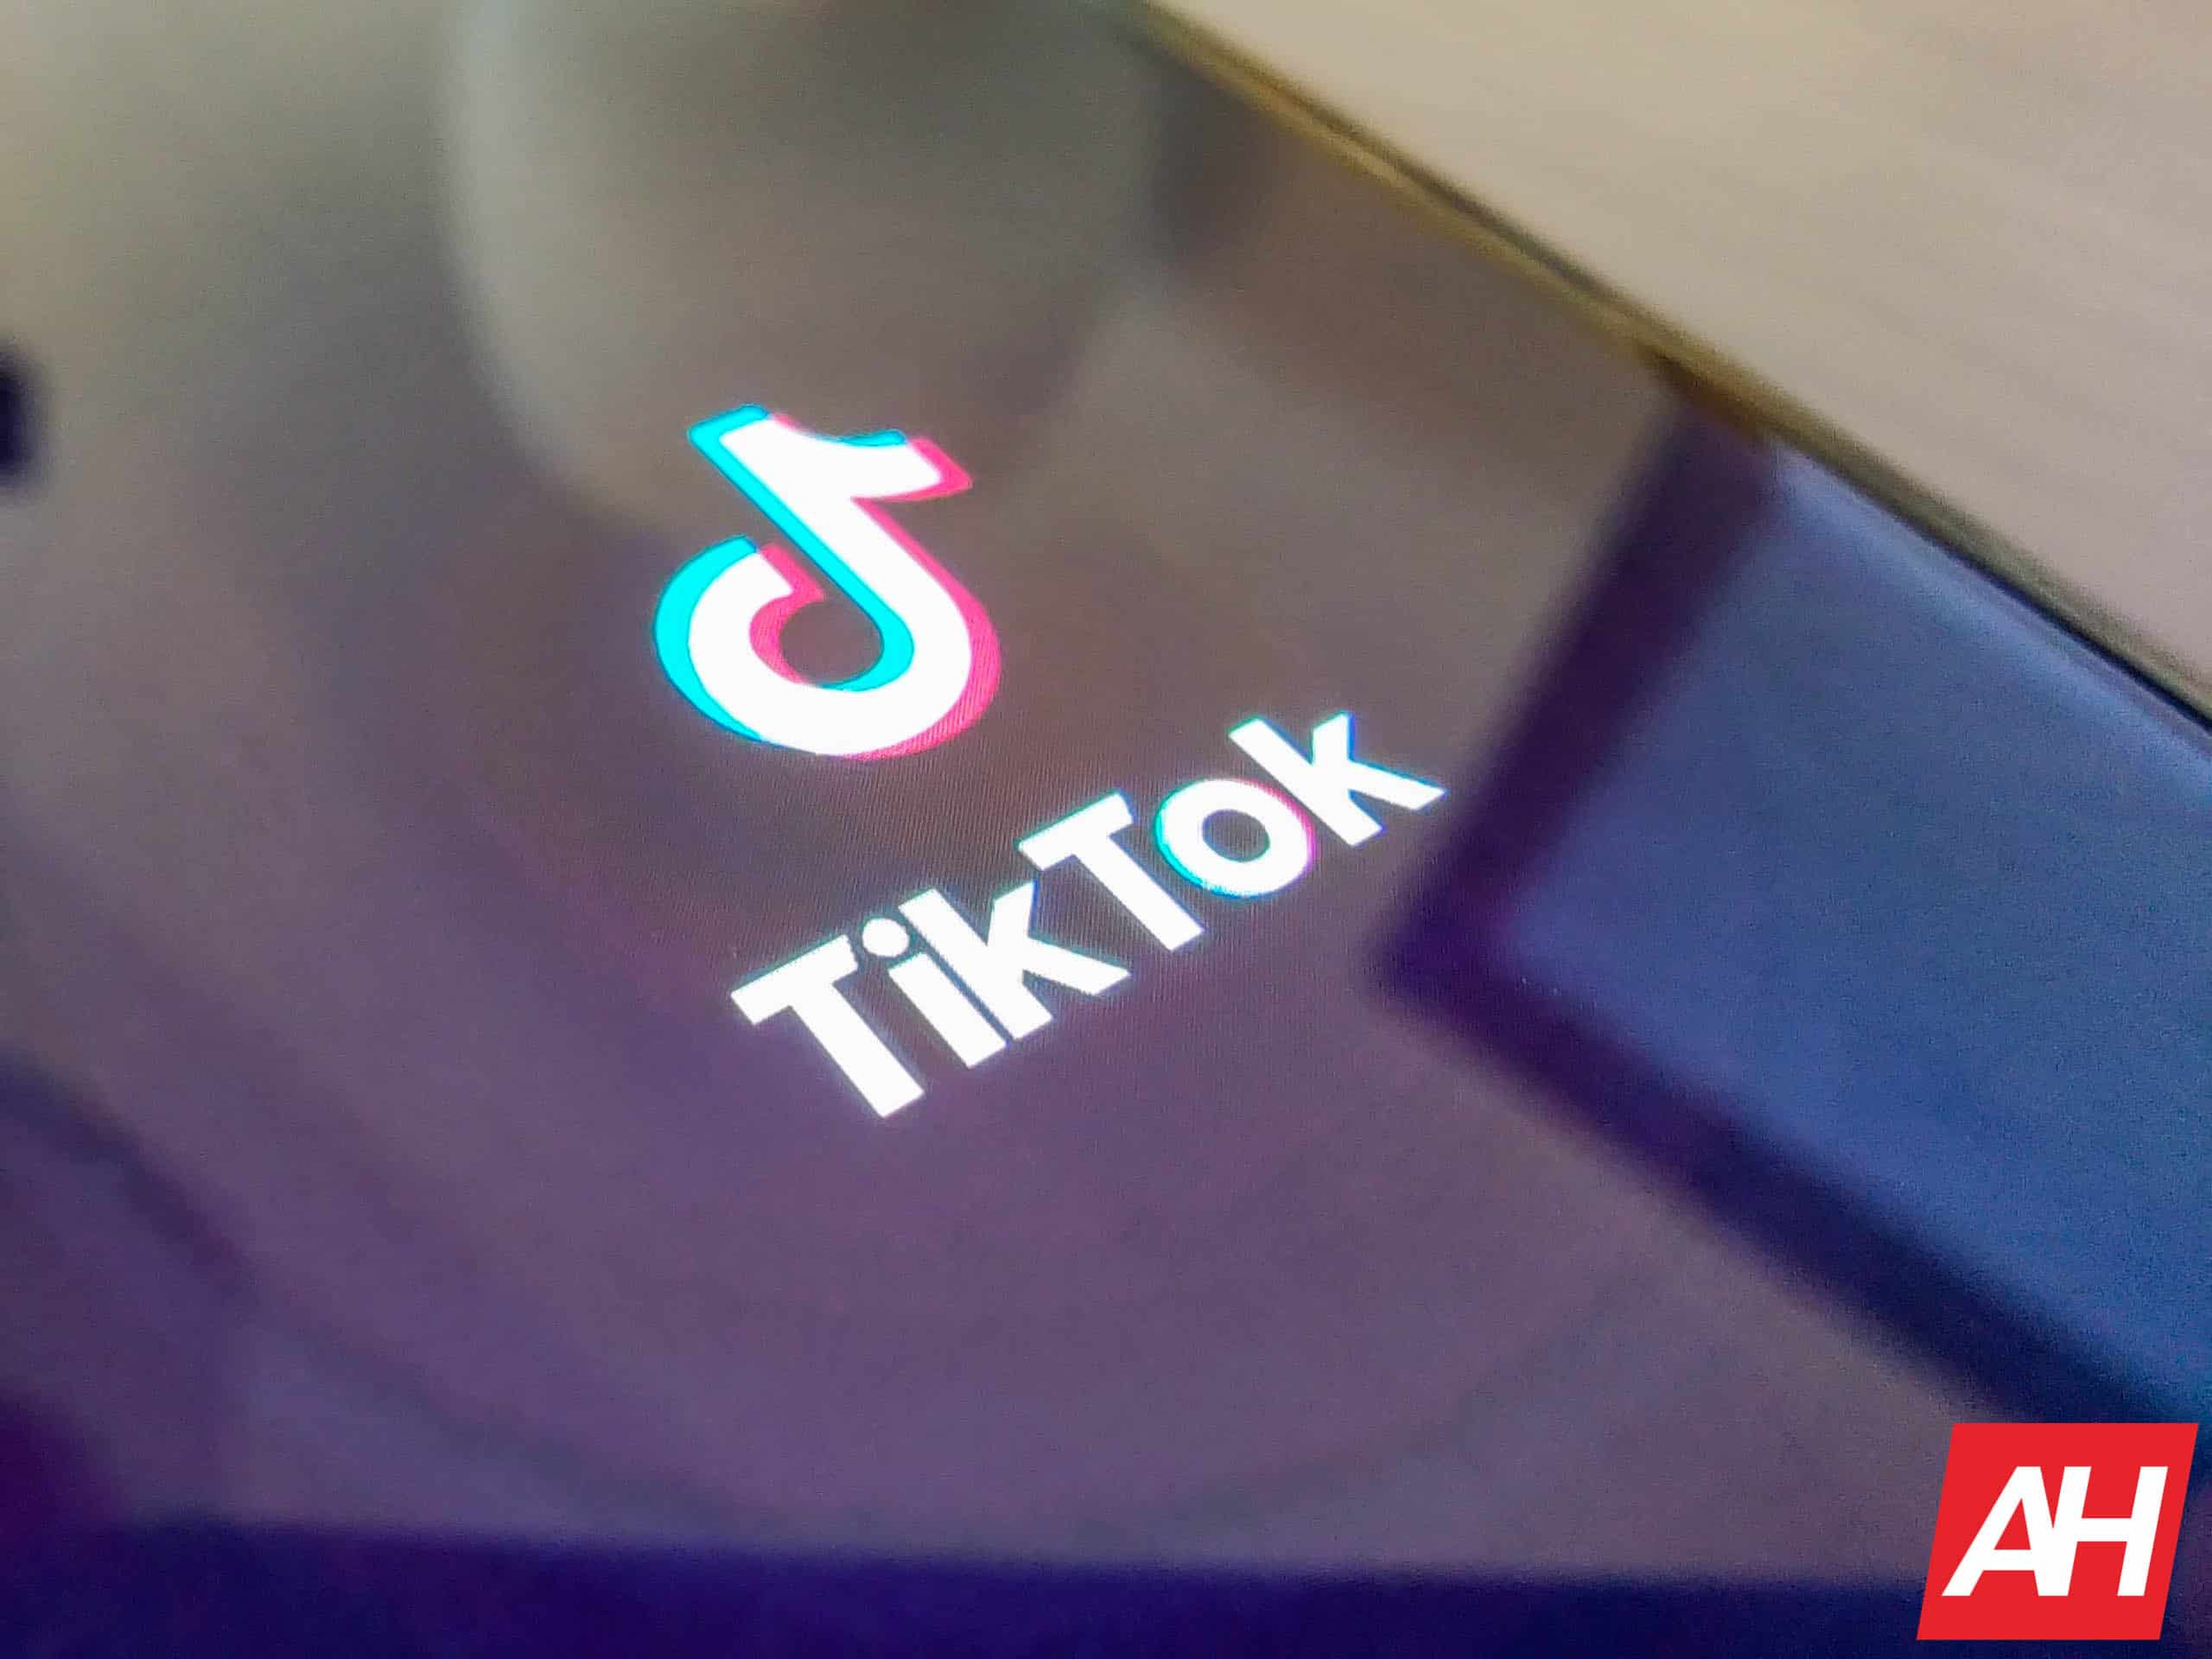 Legisladores estadounidenses presentan un proyecto de ley para eliminar TikTok de las tiendas de aplicaciones